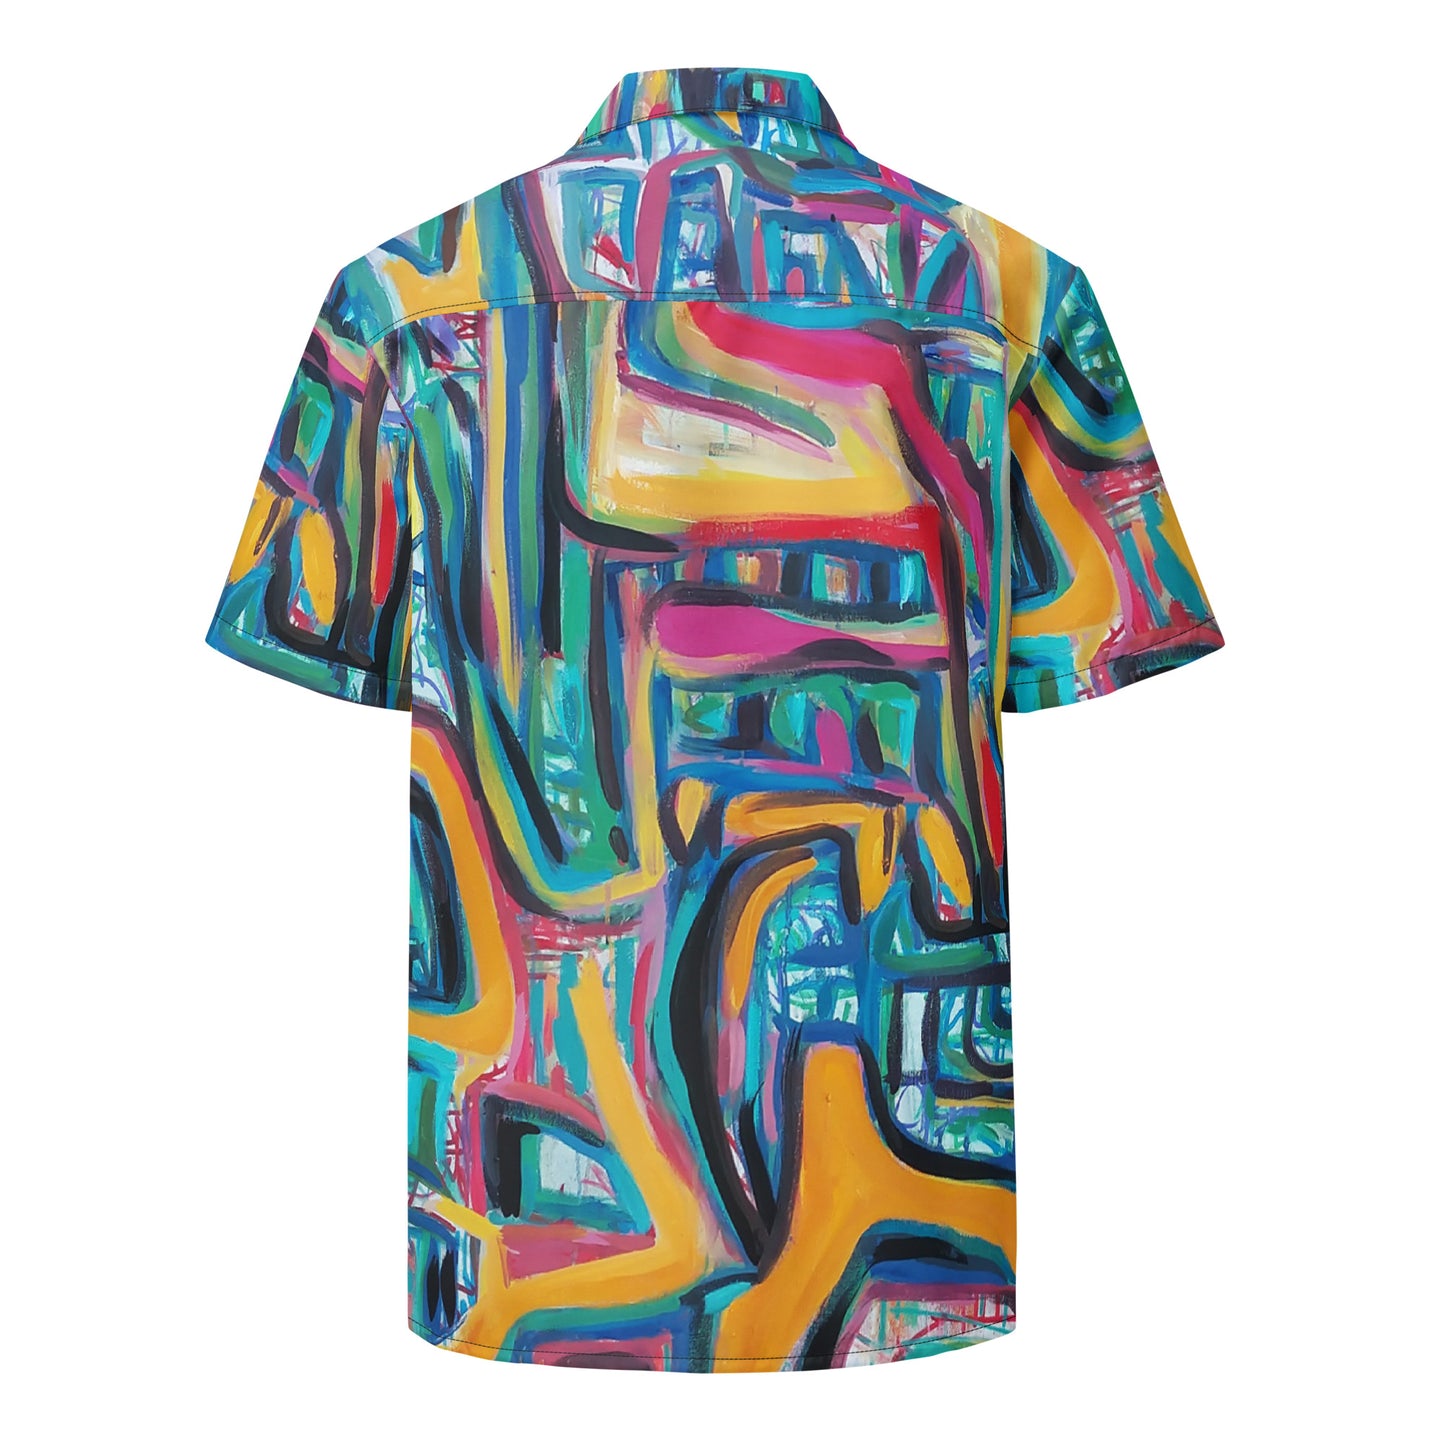 Counter Jungle, unisex button shirt